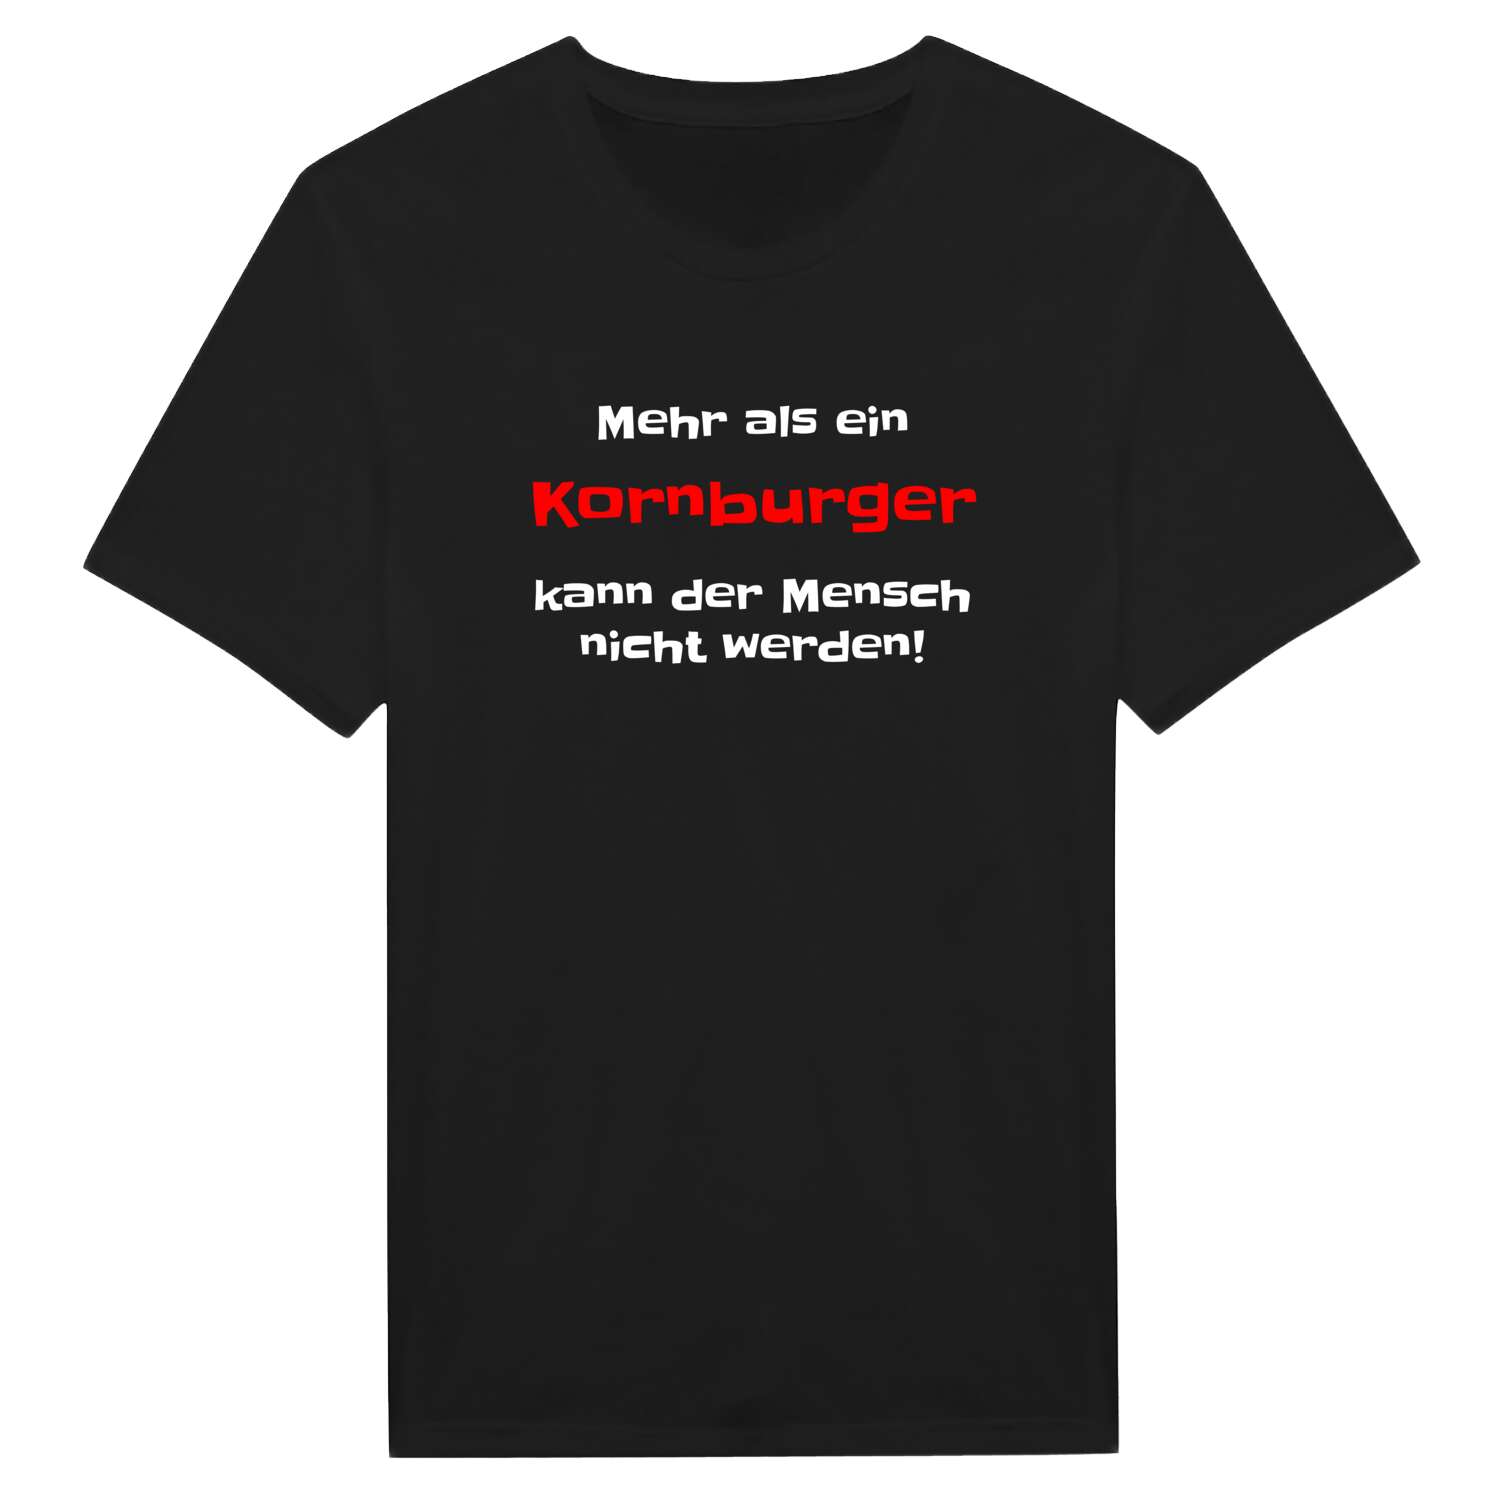 Kornburg T-Shirt »Mehr als ein«